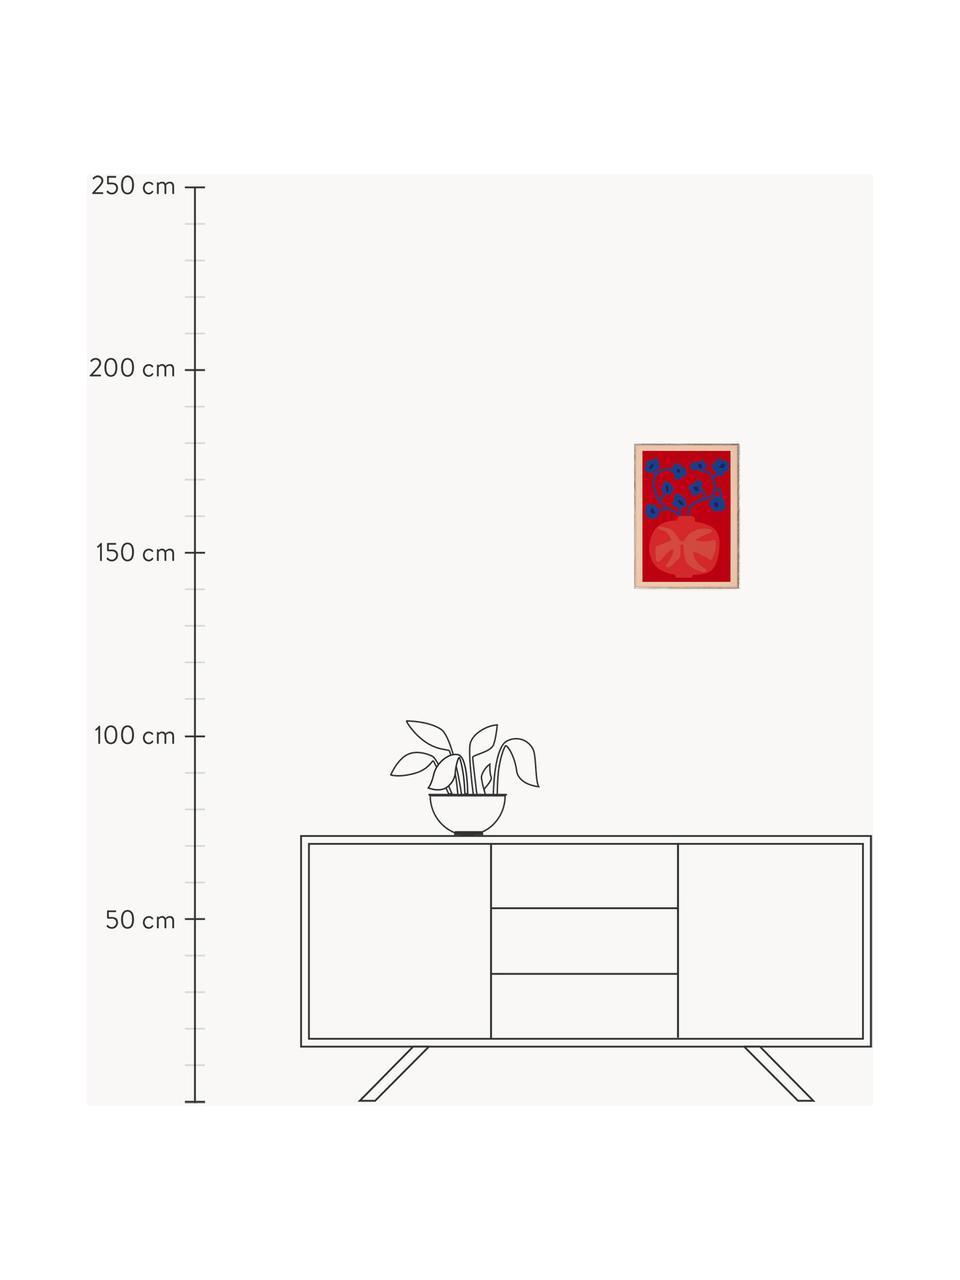 Plakát The Red Vase, 210g matný papír Hahnemühle, digitální tisk s 10 barvami odolnými vůči UV záření, Odstíny červené a modré, Š 30 cm, V 40 cm